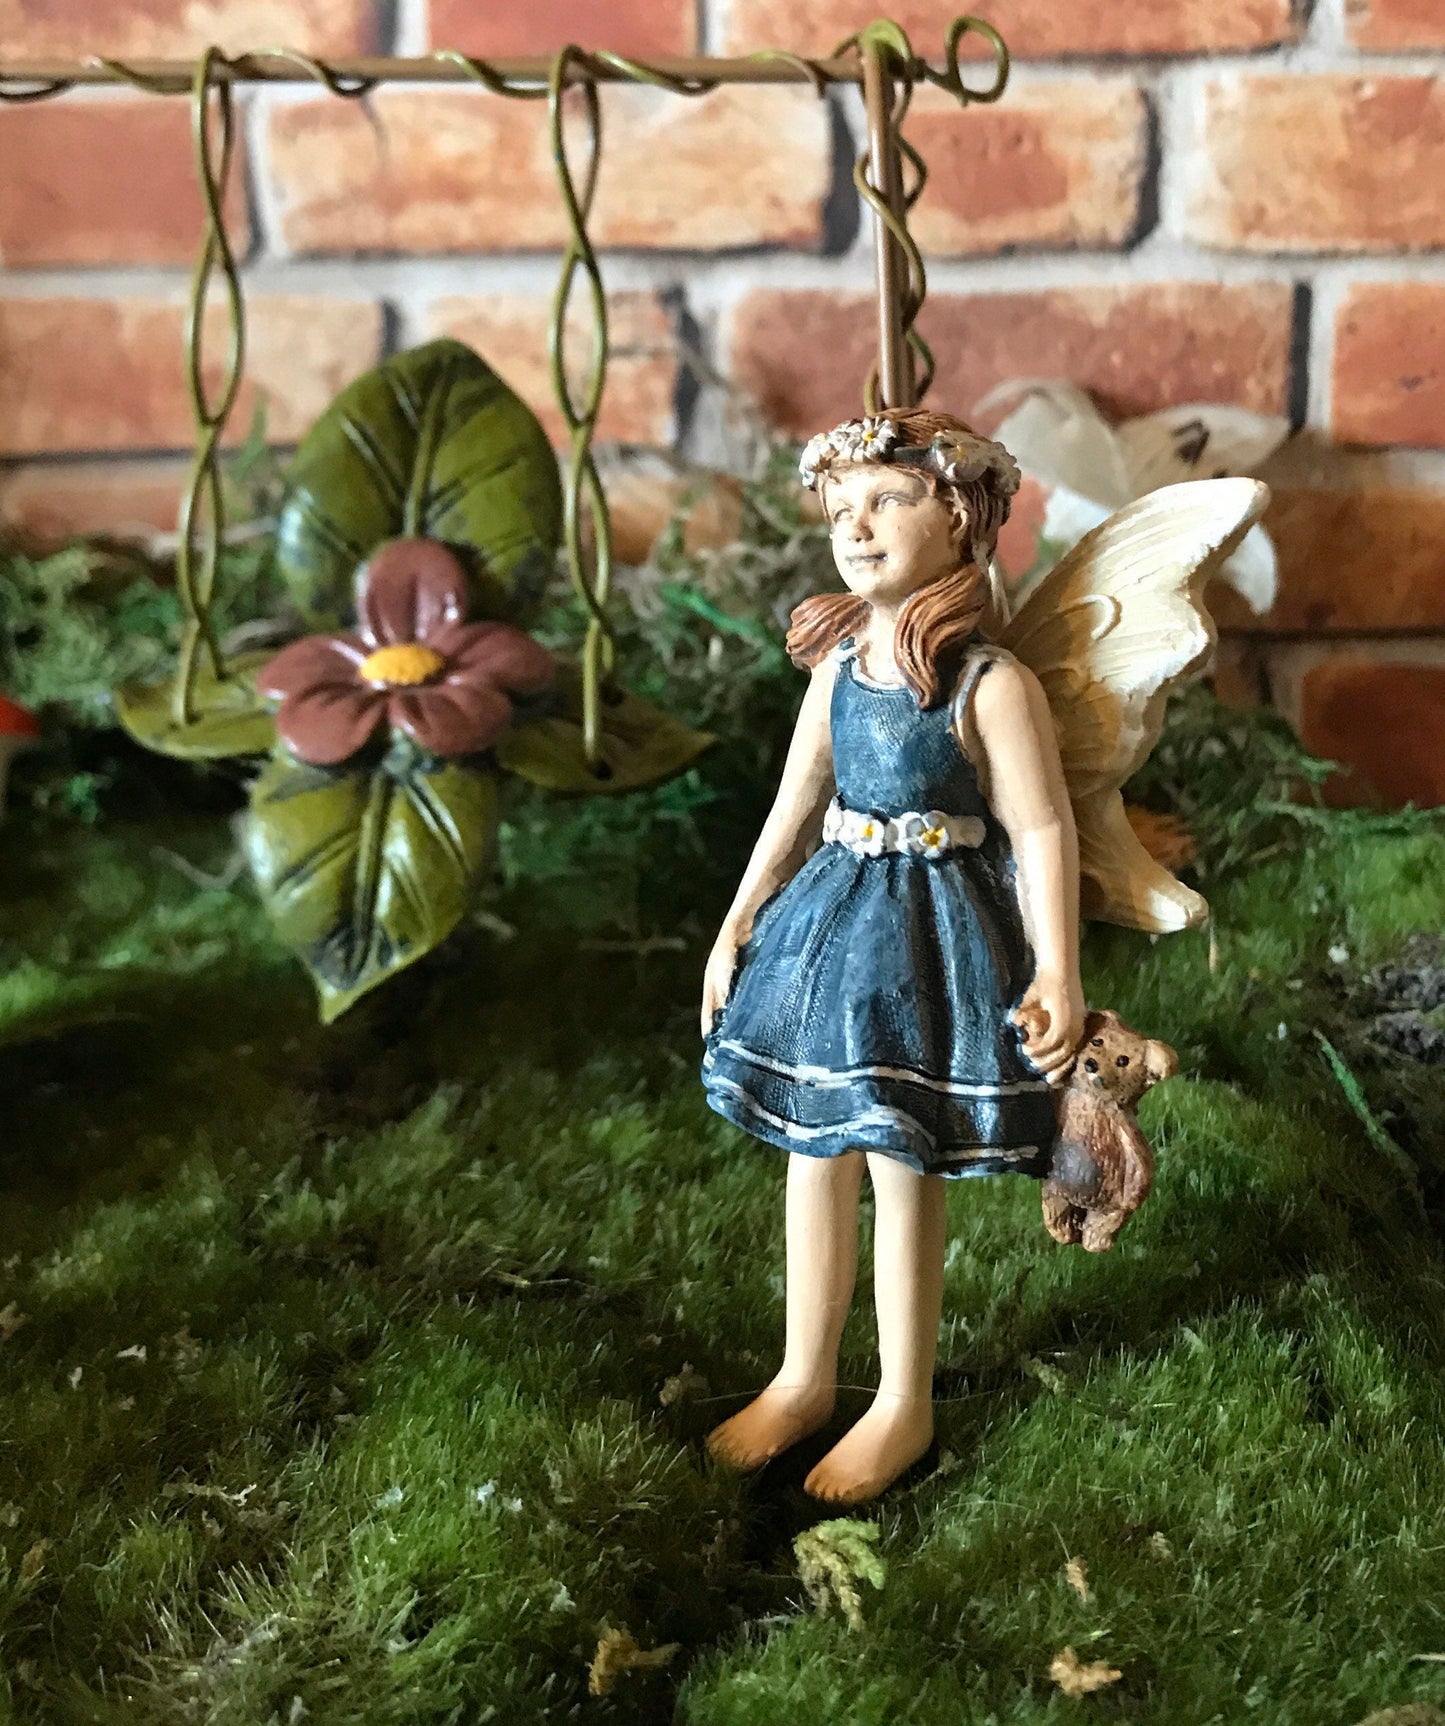 Sweet fairy girl with teddy bear toy